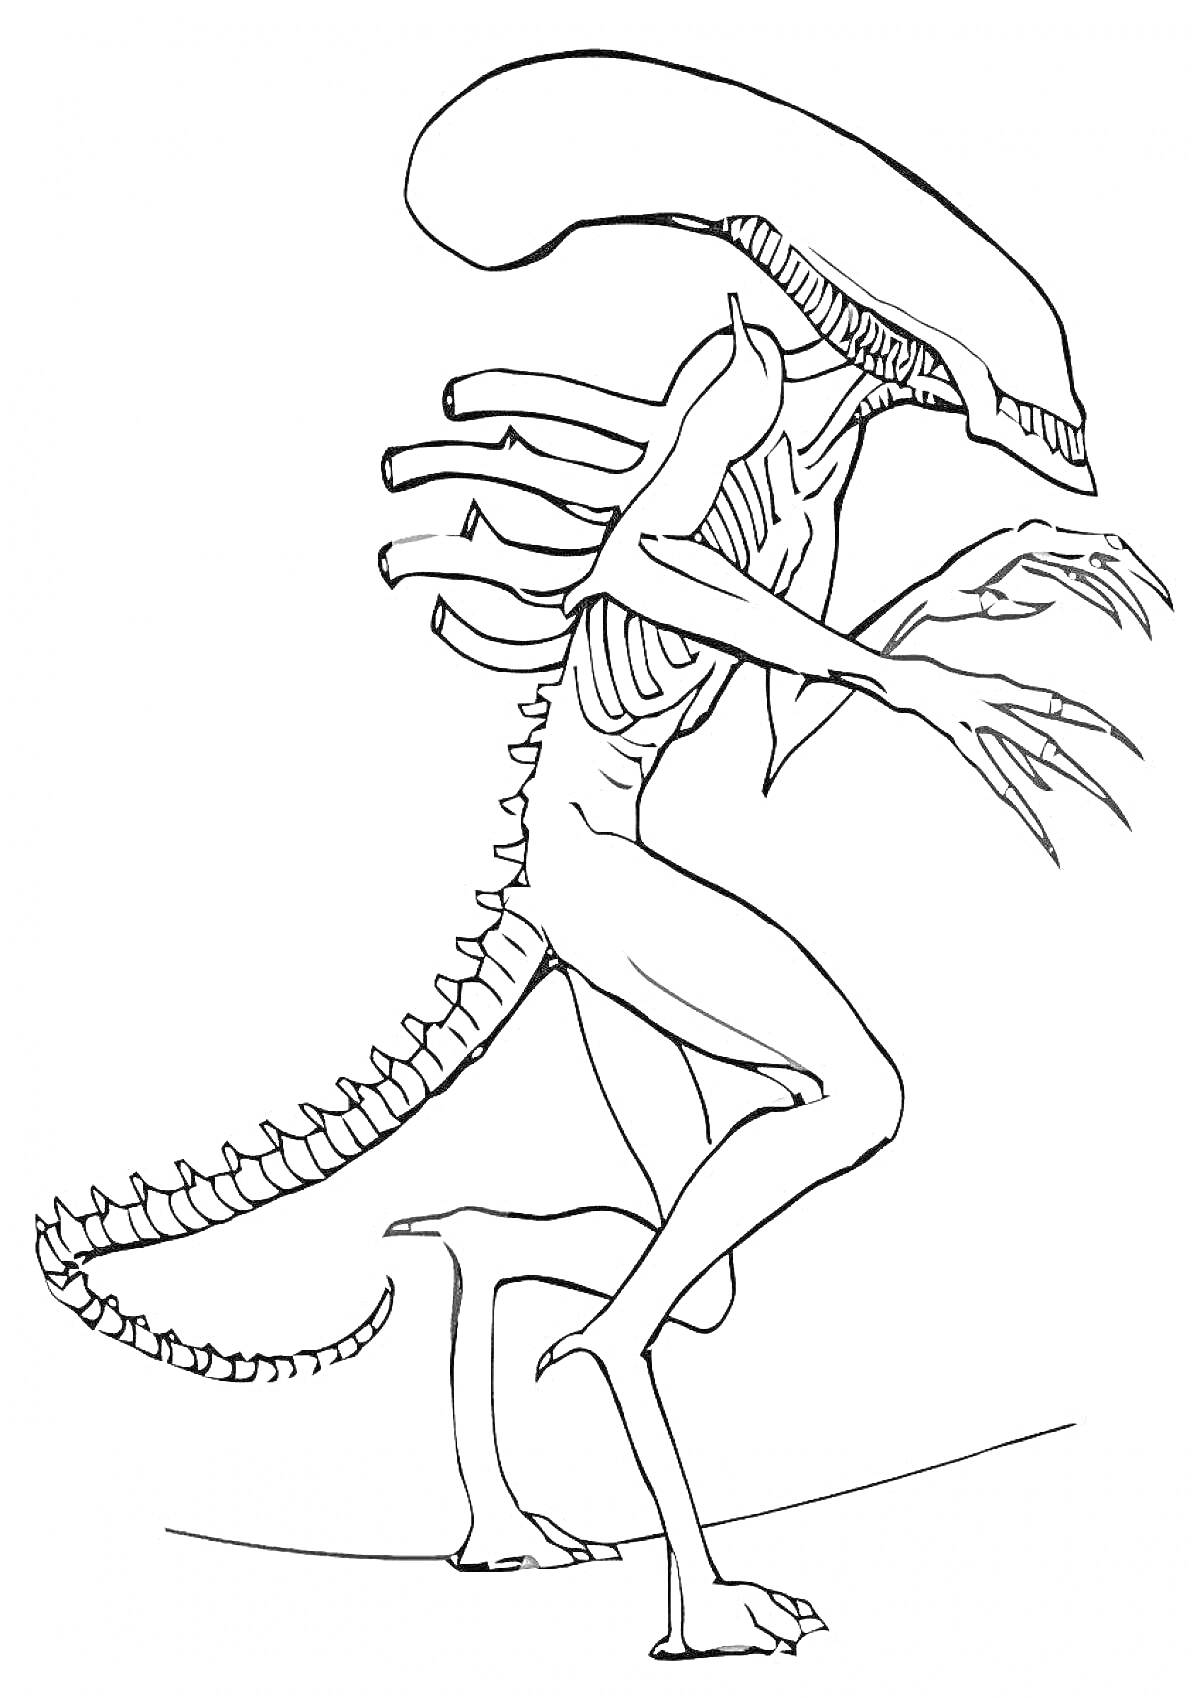 Раскраска Инопланетное существо с длинным хвостом и вытянутой головой, демонстрирующее агрессивную позу